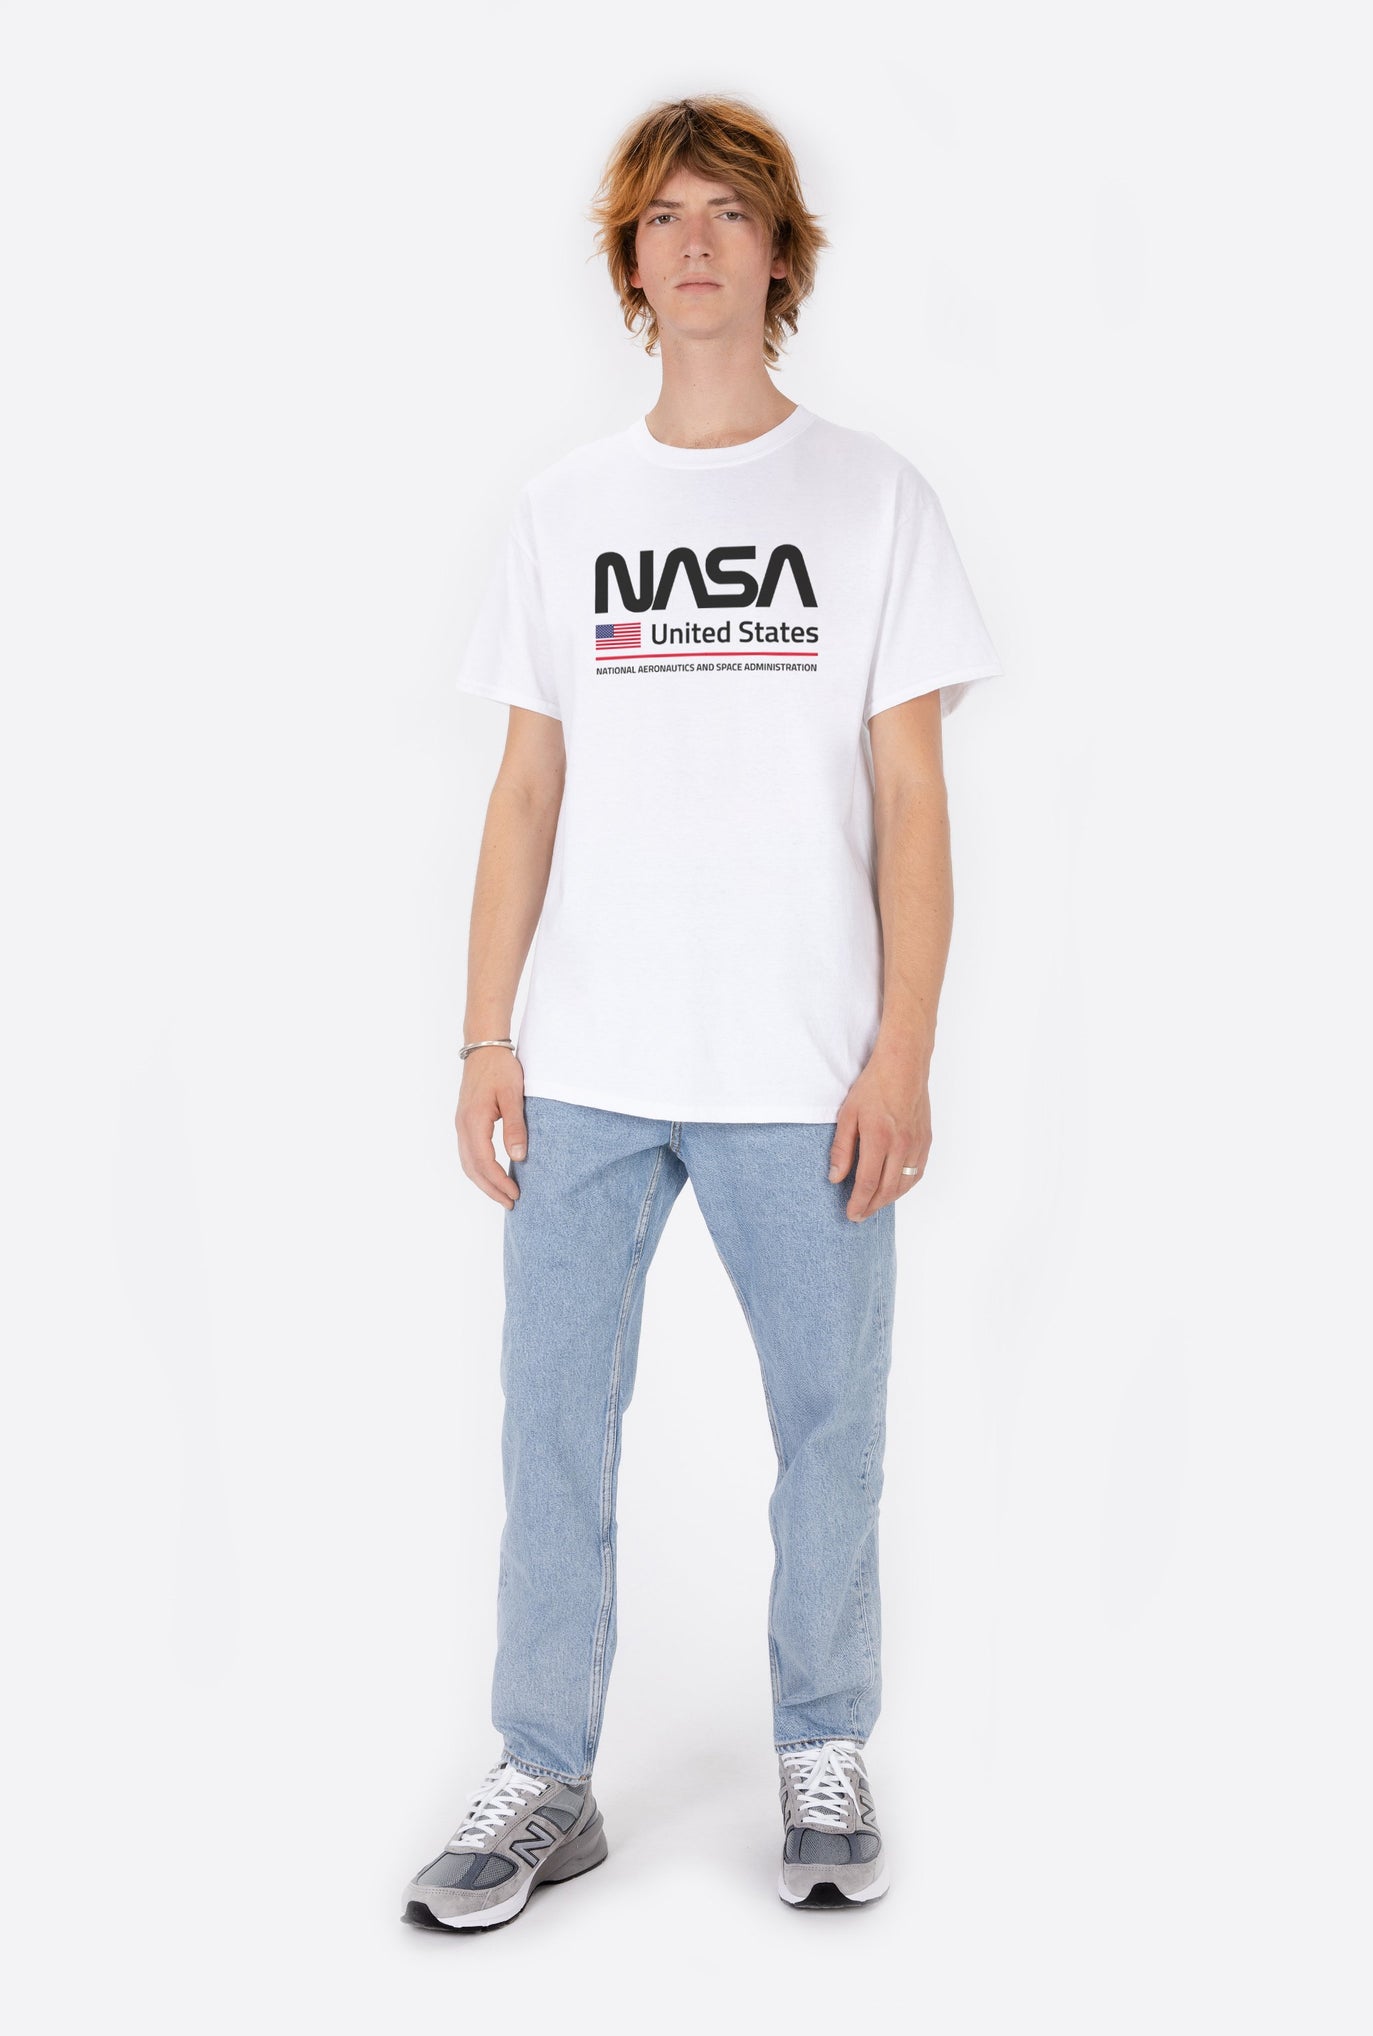 T-Shirt S/S NASA United States